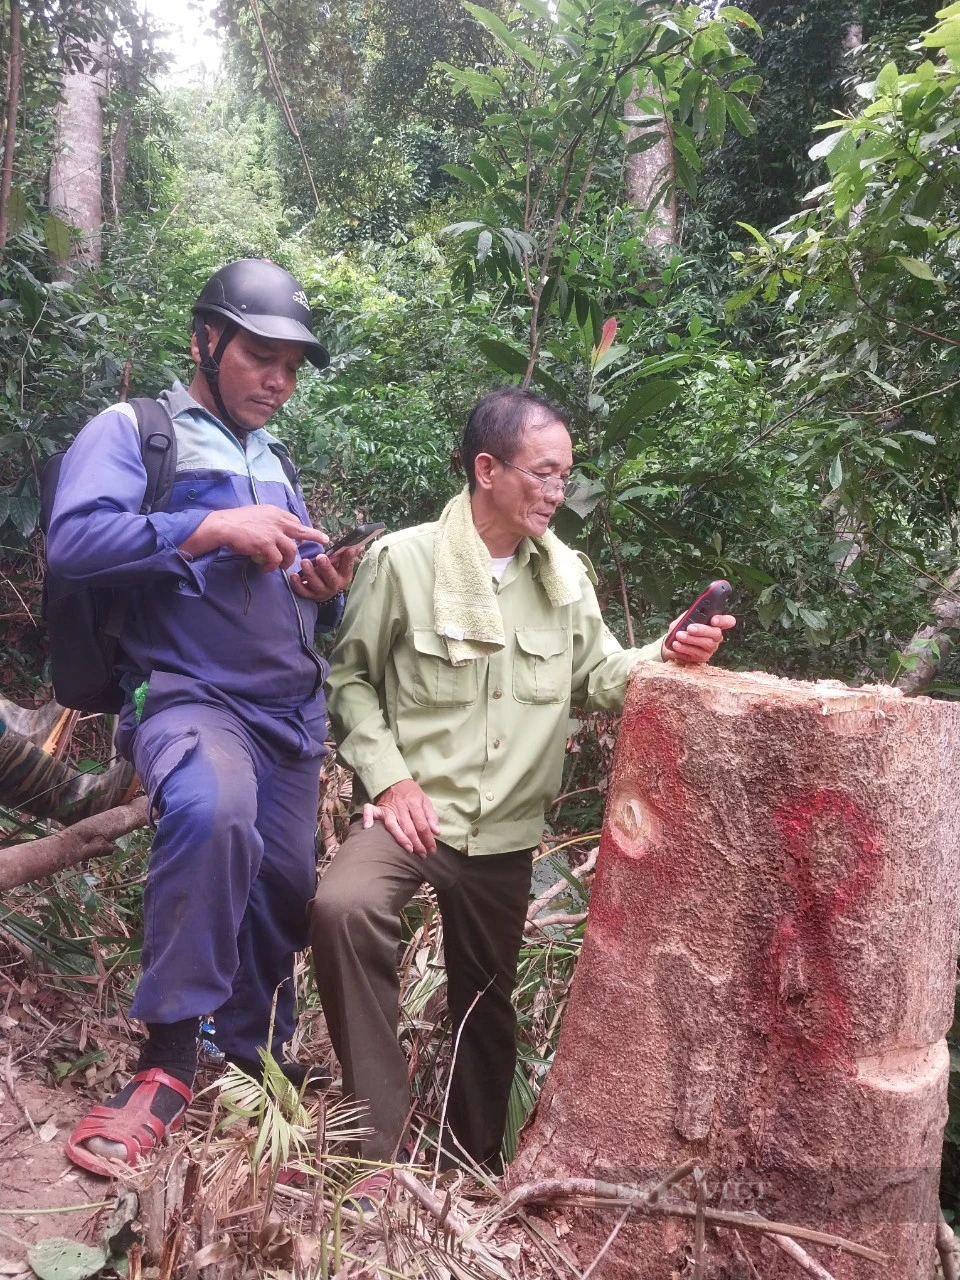 Hạt Kiểm lâm đã khởi tố vụ phá rừng thuộc dự án đường dây 110kV của thủy điện Tr'Hy ở Quảng Nam- Ảnh 1.